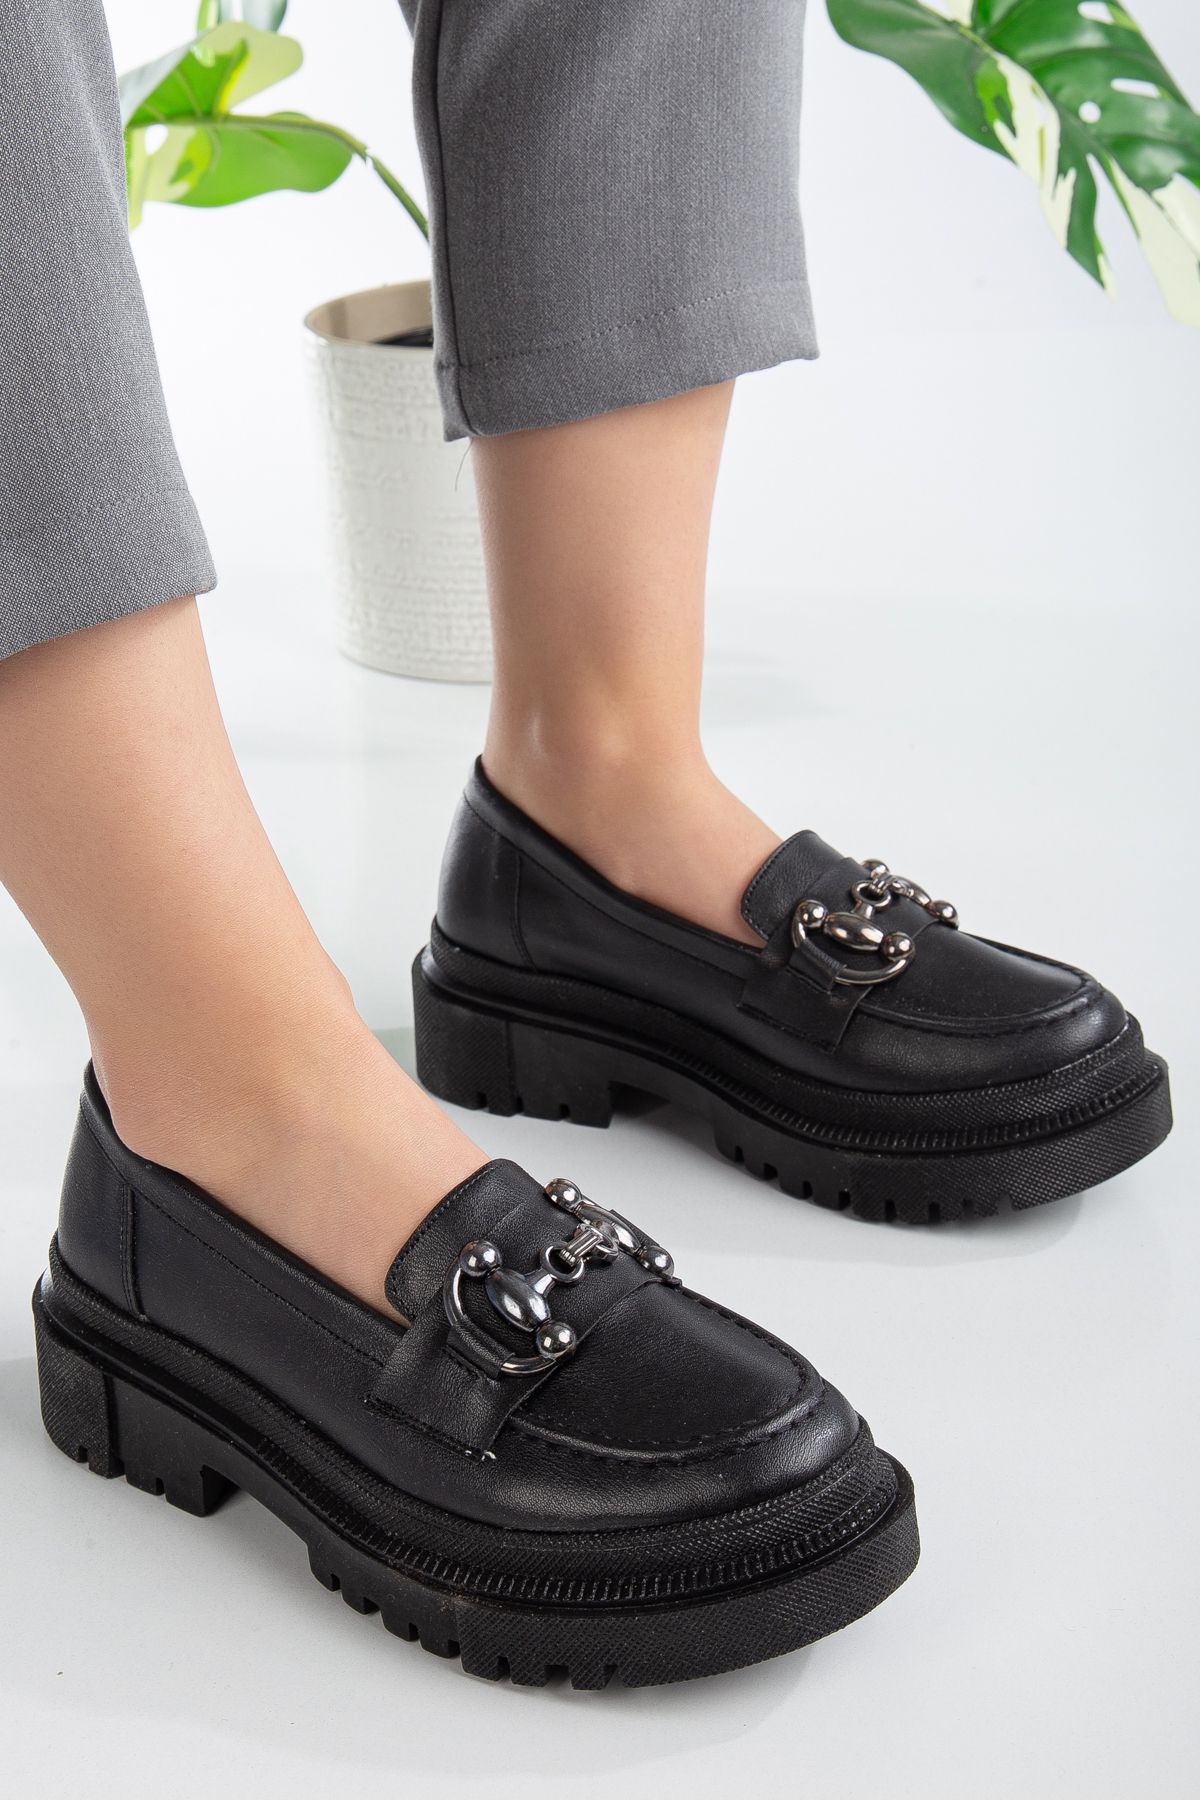 Goteen Kadın Ortopedik Taban Siyah Cilt Tokalı Günlük Klasik Ayakkabı